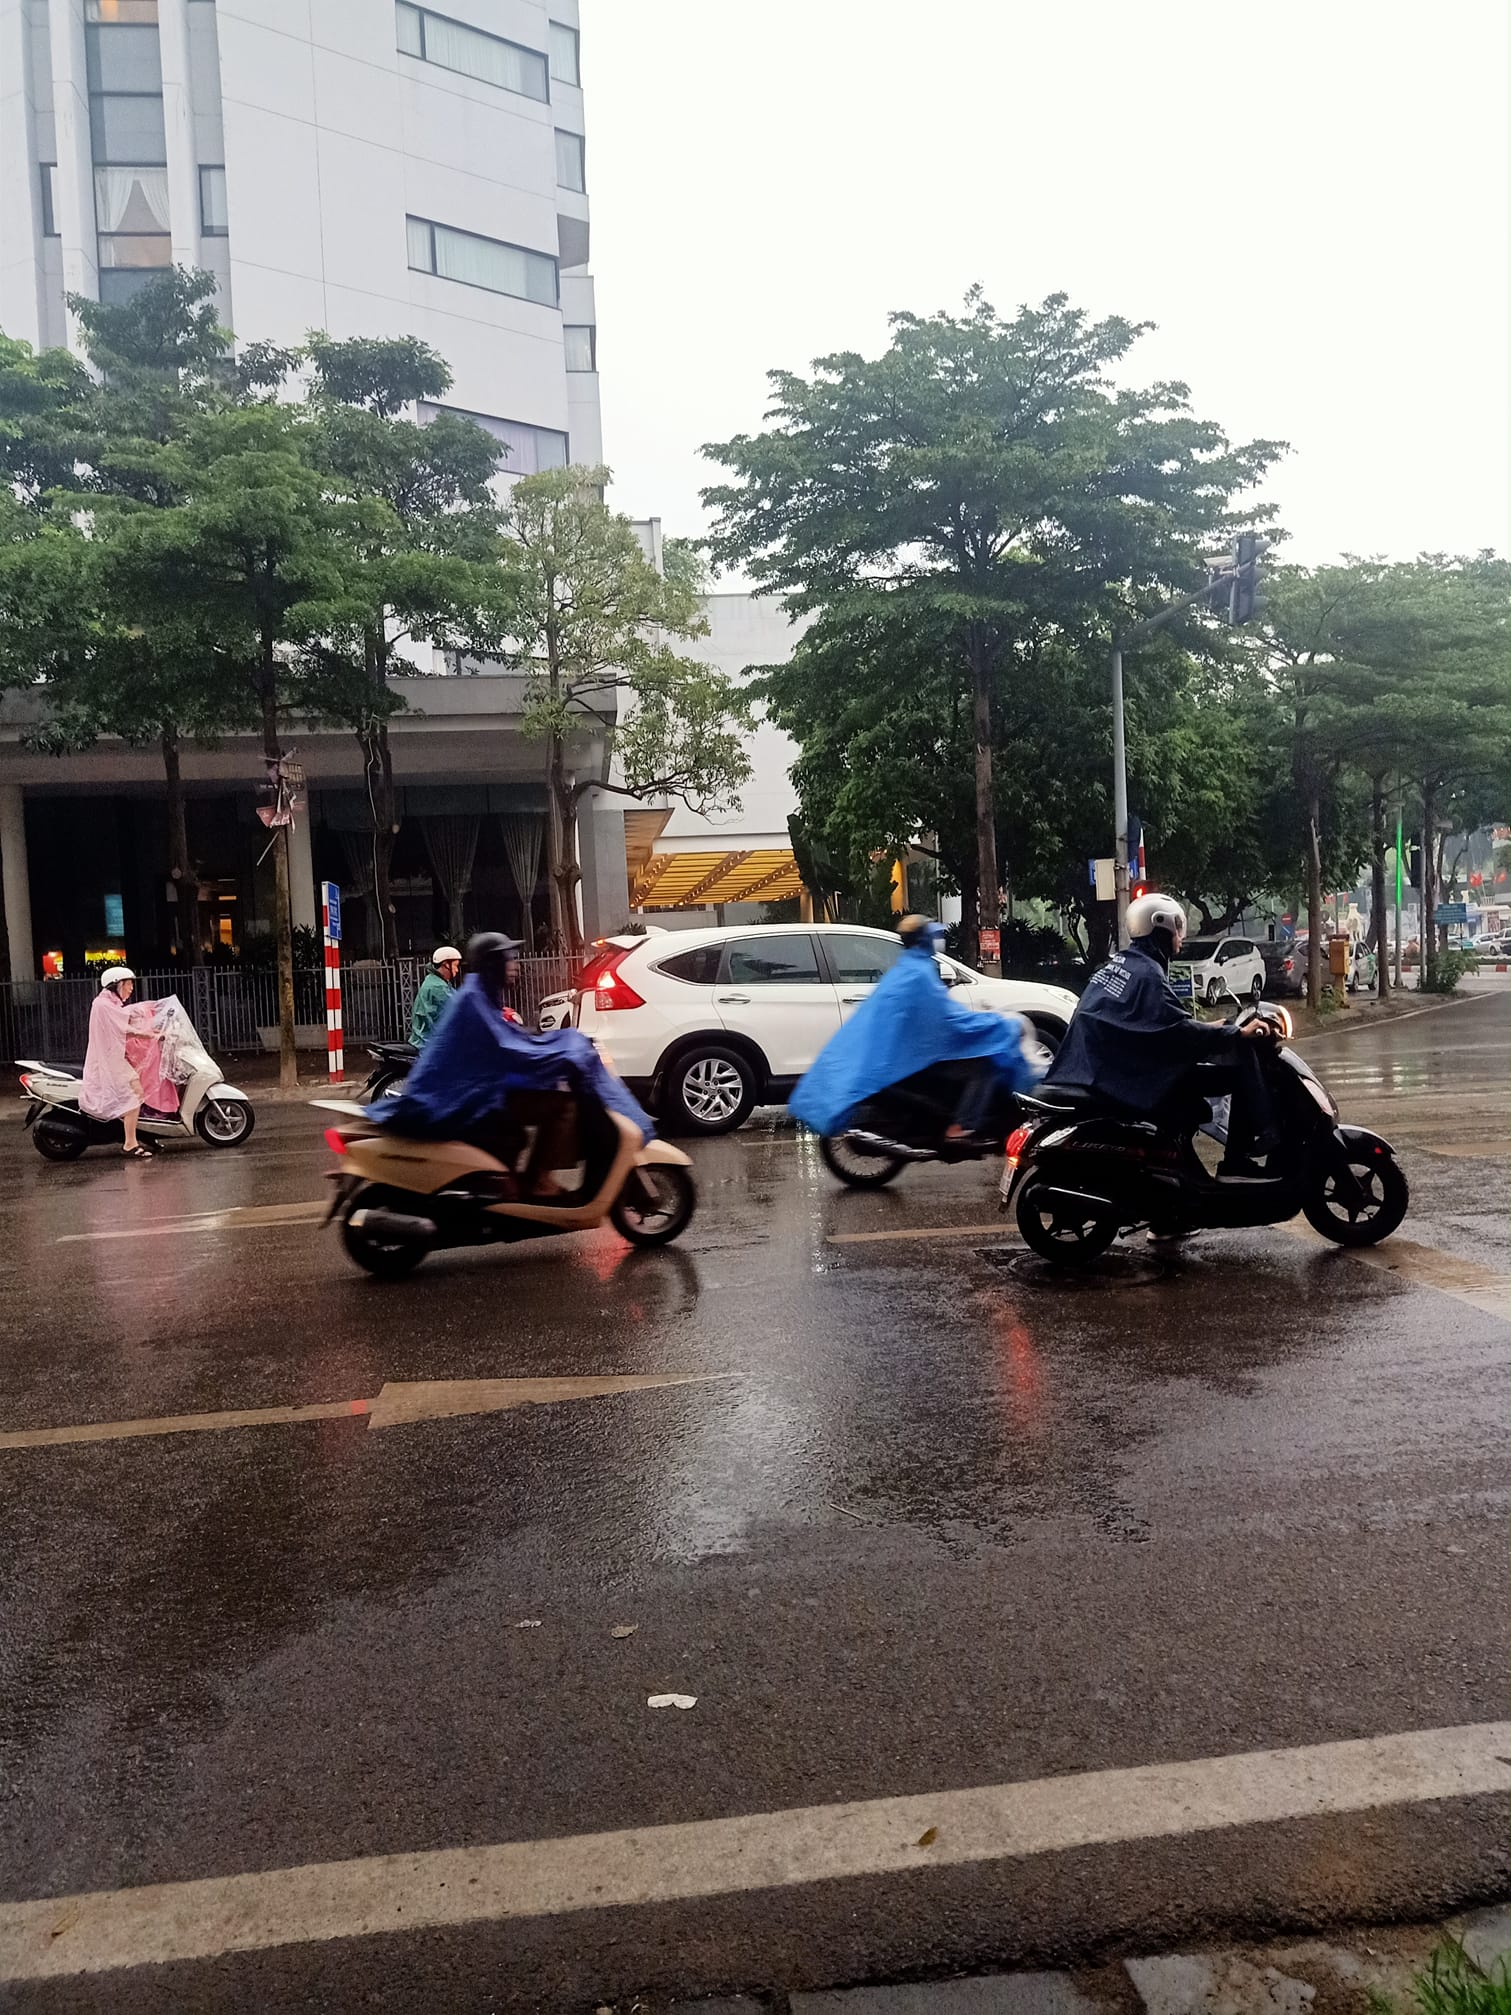 Trời Hà Nội tối sầm lúc 7h sáng, mưa to như trút nước, dân công sở ngại đi làm - Ảnh 5.